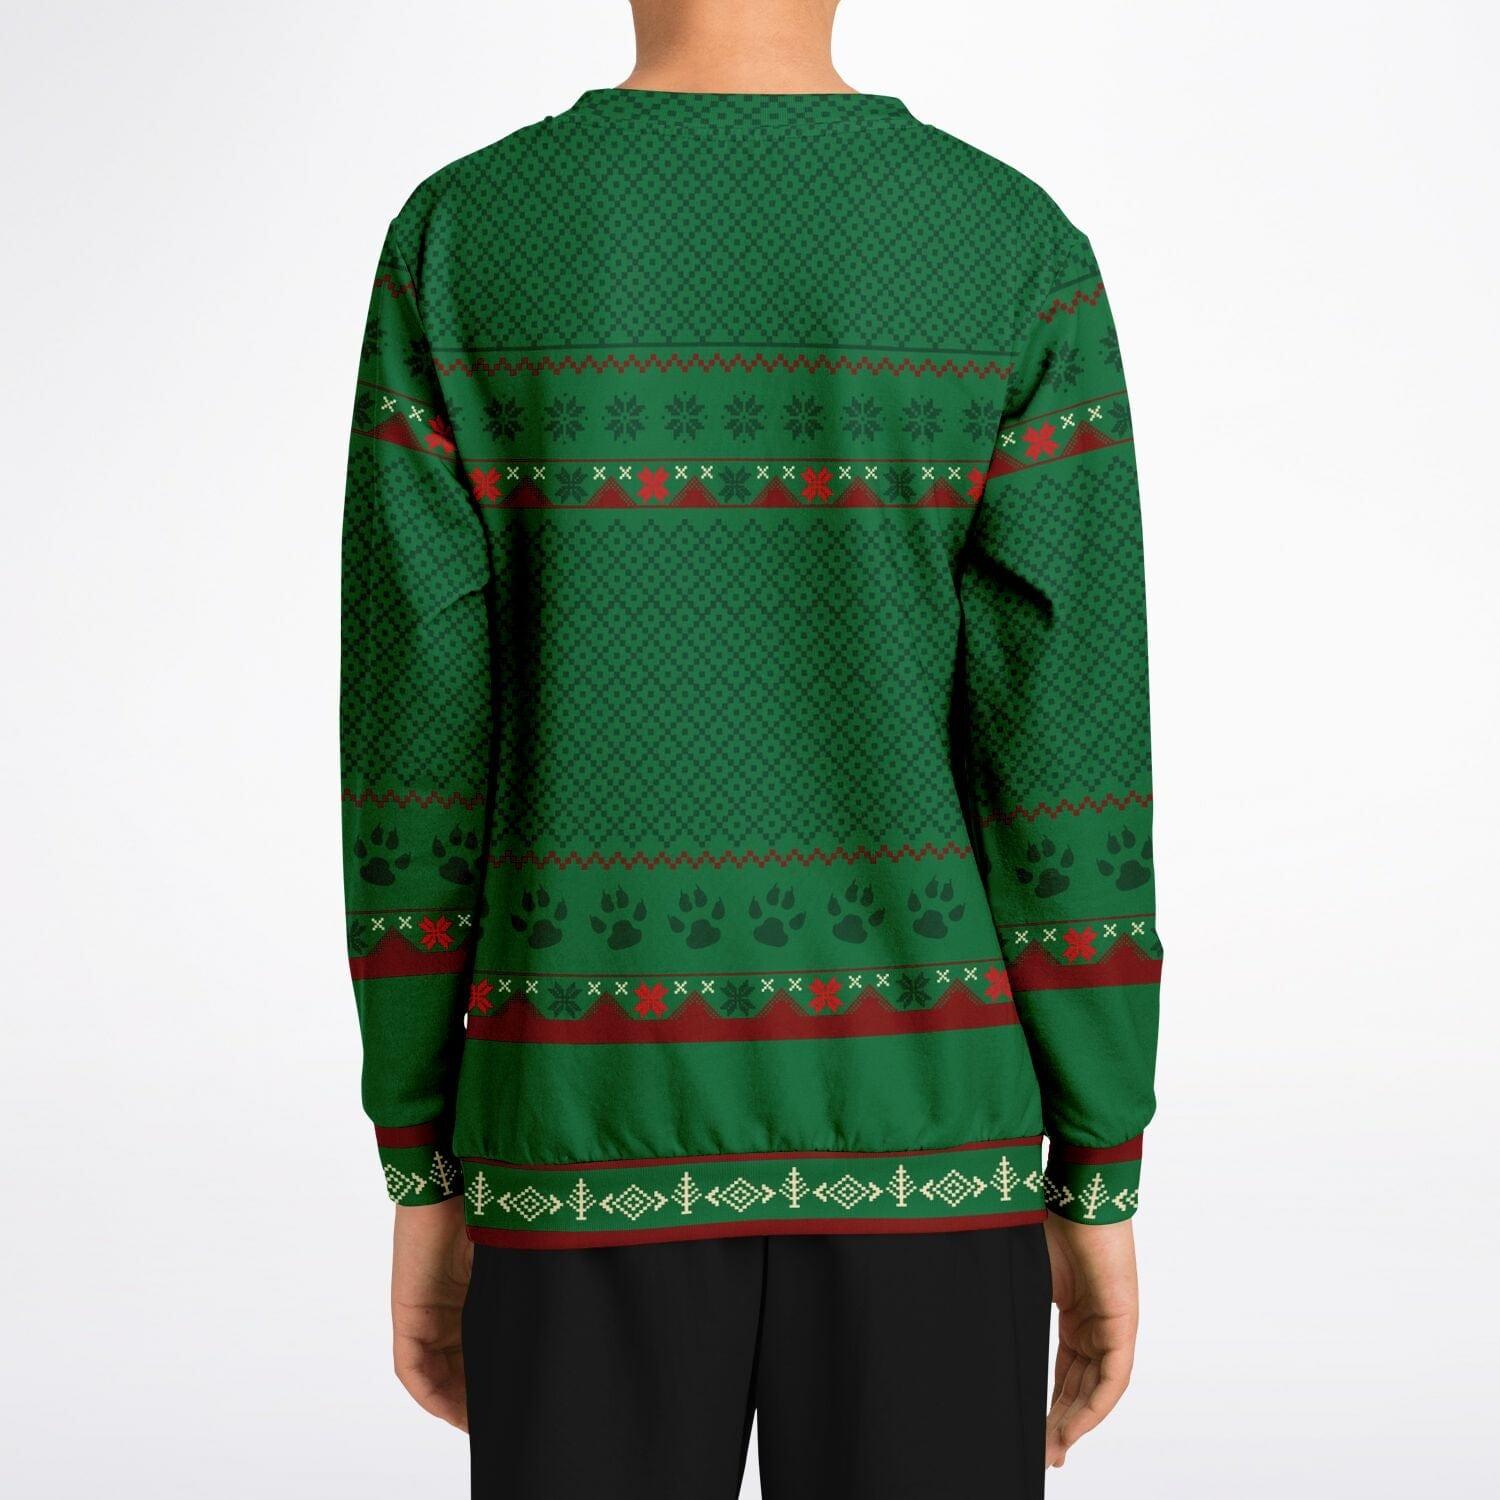 Feliz Navidog Labrador Kids Unisex Ugly Christmas Sweatshirt - TopKoalaTee